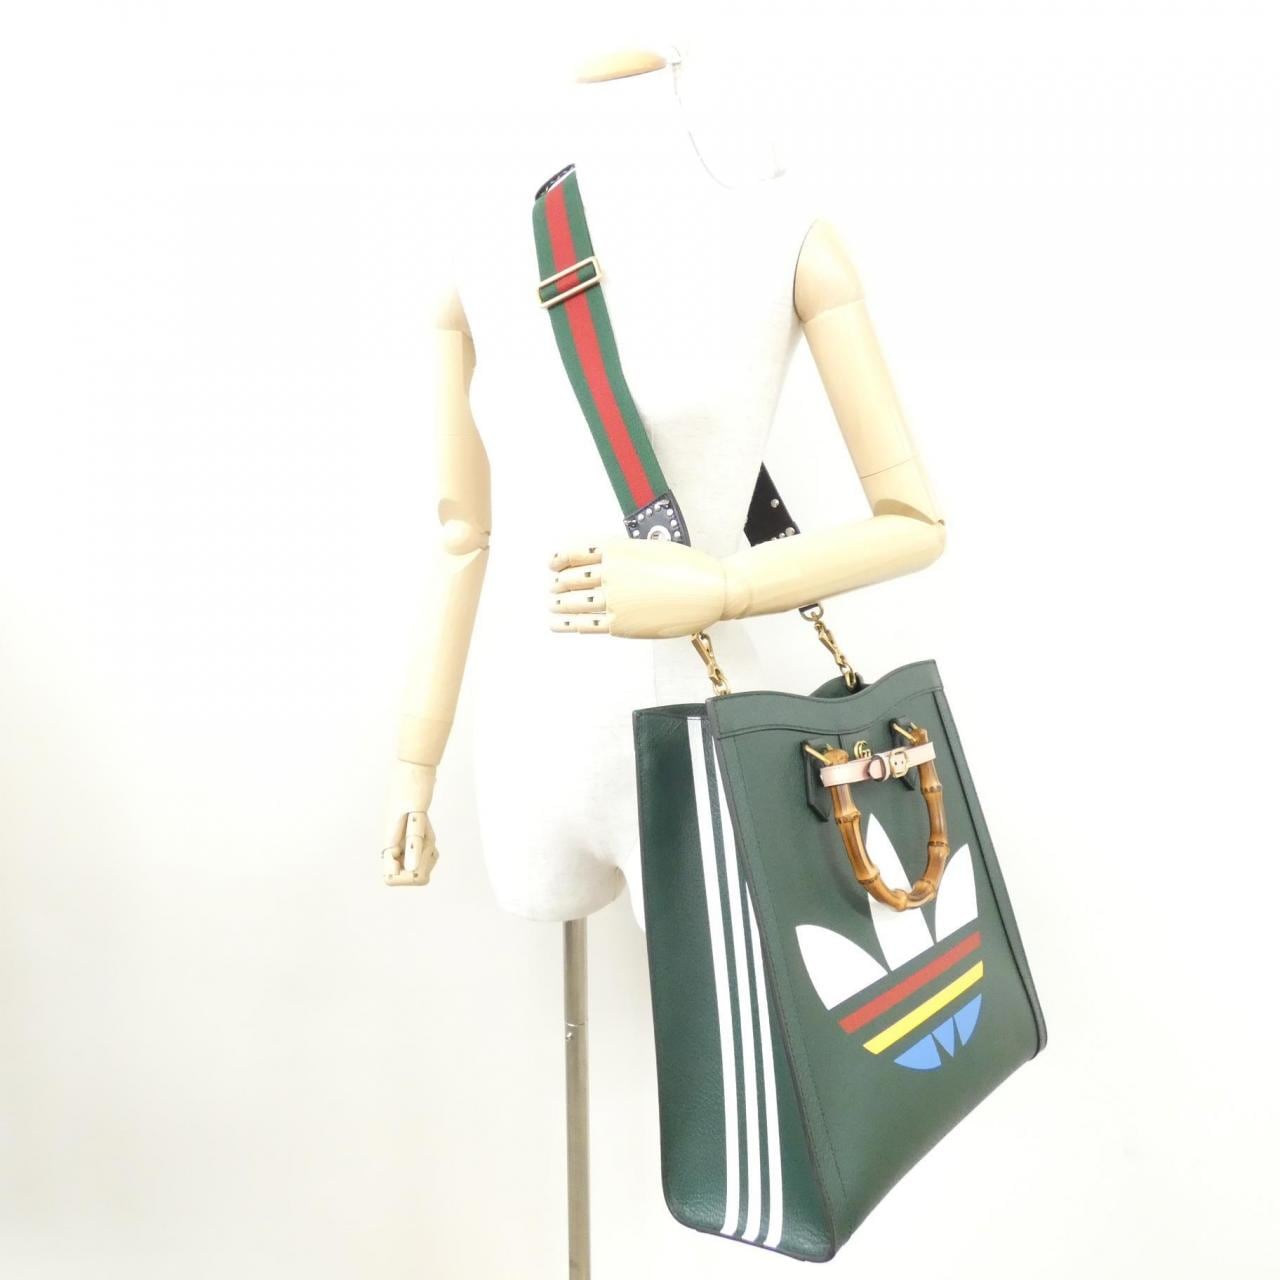 [Unused items] Gucci DIANA 721080 AAA7E bag